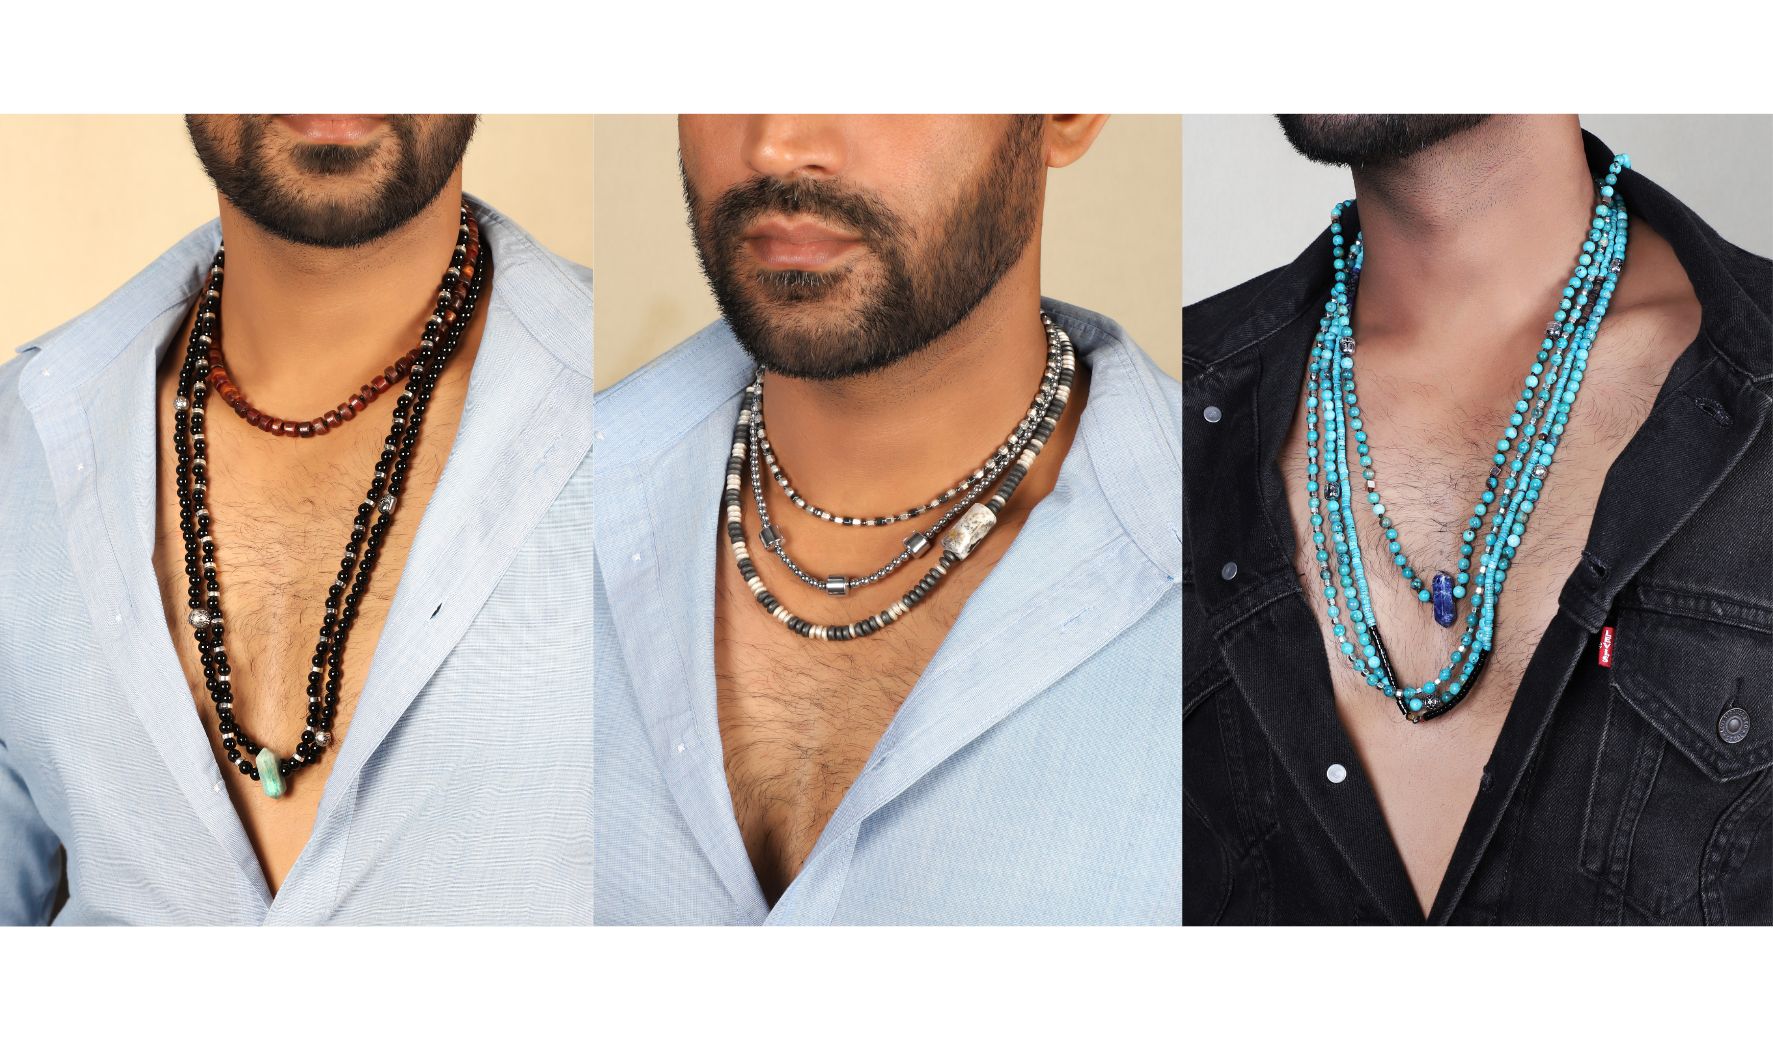 Men's Necklaces